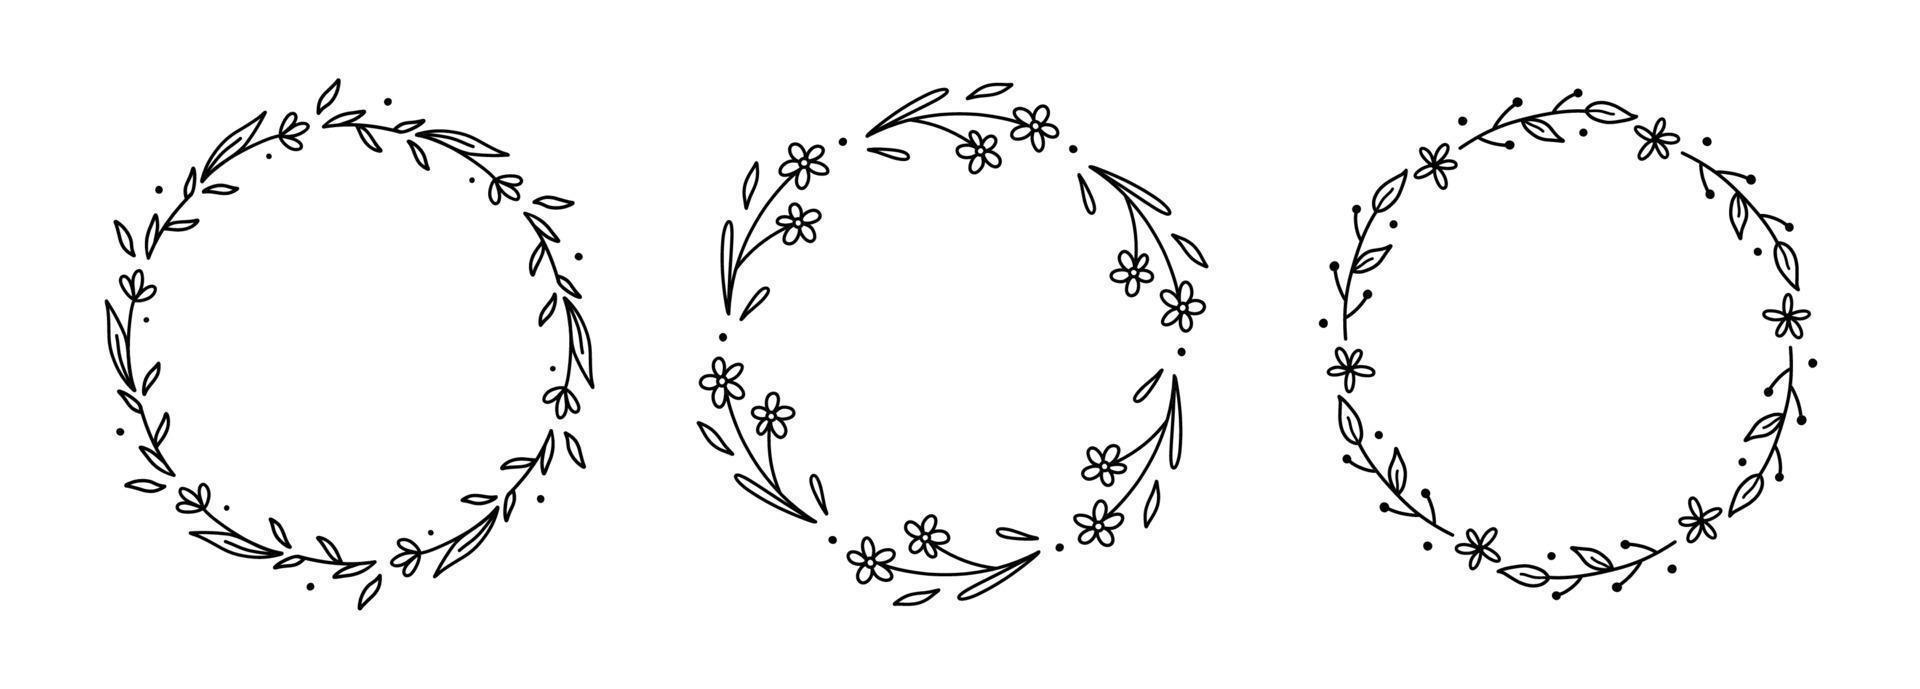 Reihe von Blumenkranz isoliert auf weißem Hintergrund. runde rahmen mit blumen und blättern. handgezeichnete Vektorgrafik im Doodle-Stil. Perfekt für Karten, Einladungen, Dekorationen, Logos. vektor